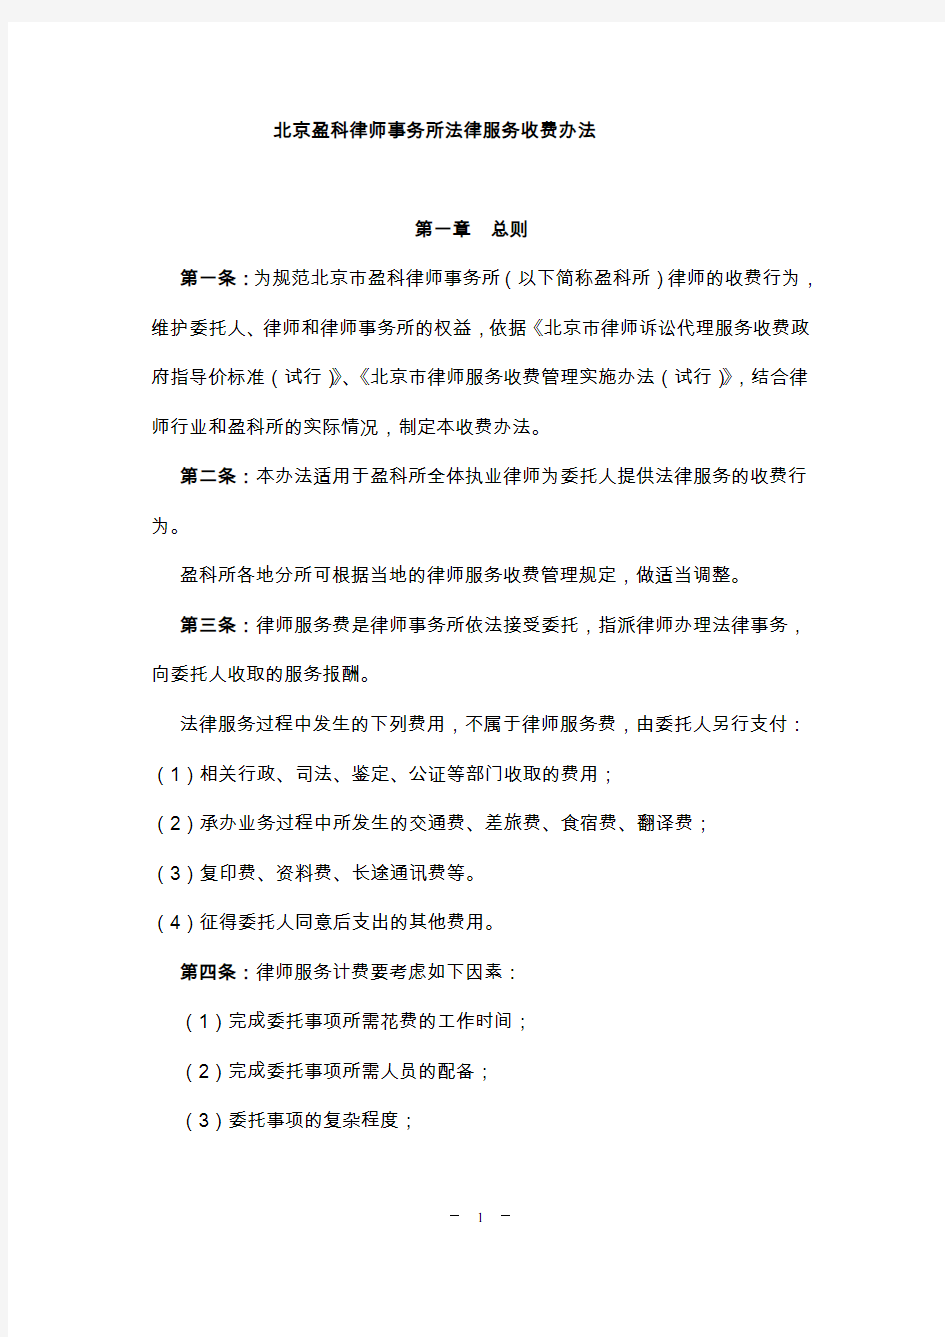 (完整版)北京盈科律师事务所法律服务收费办法